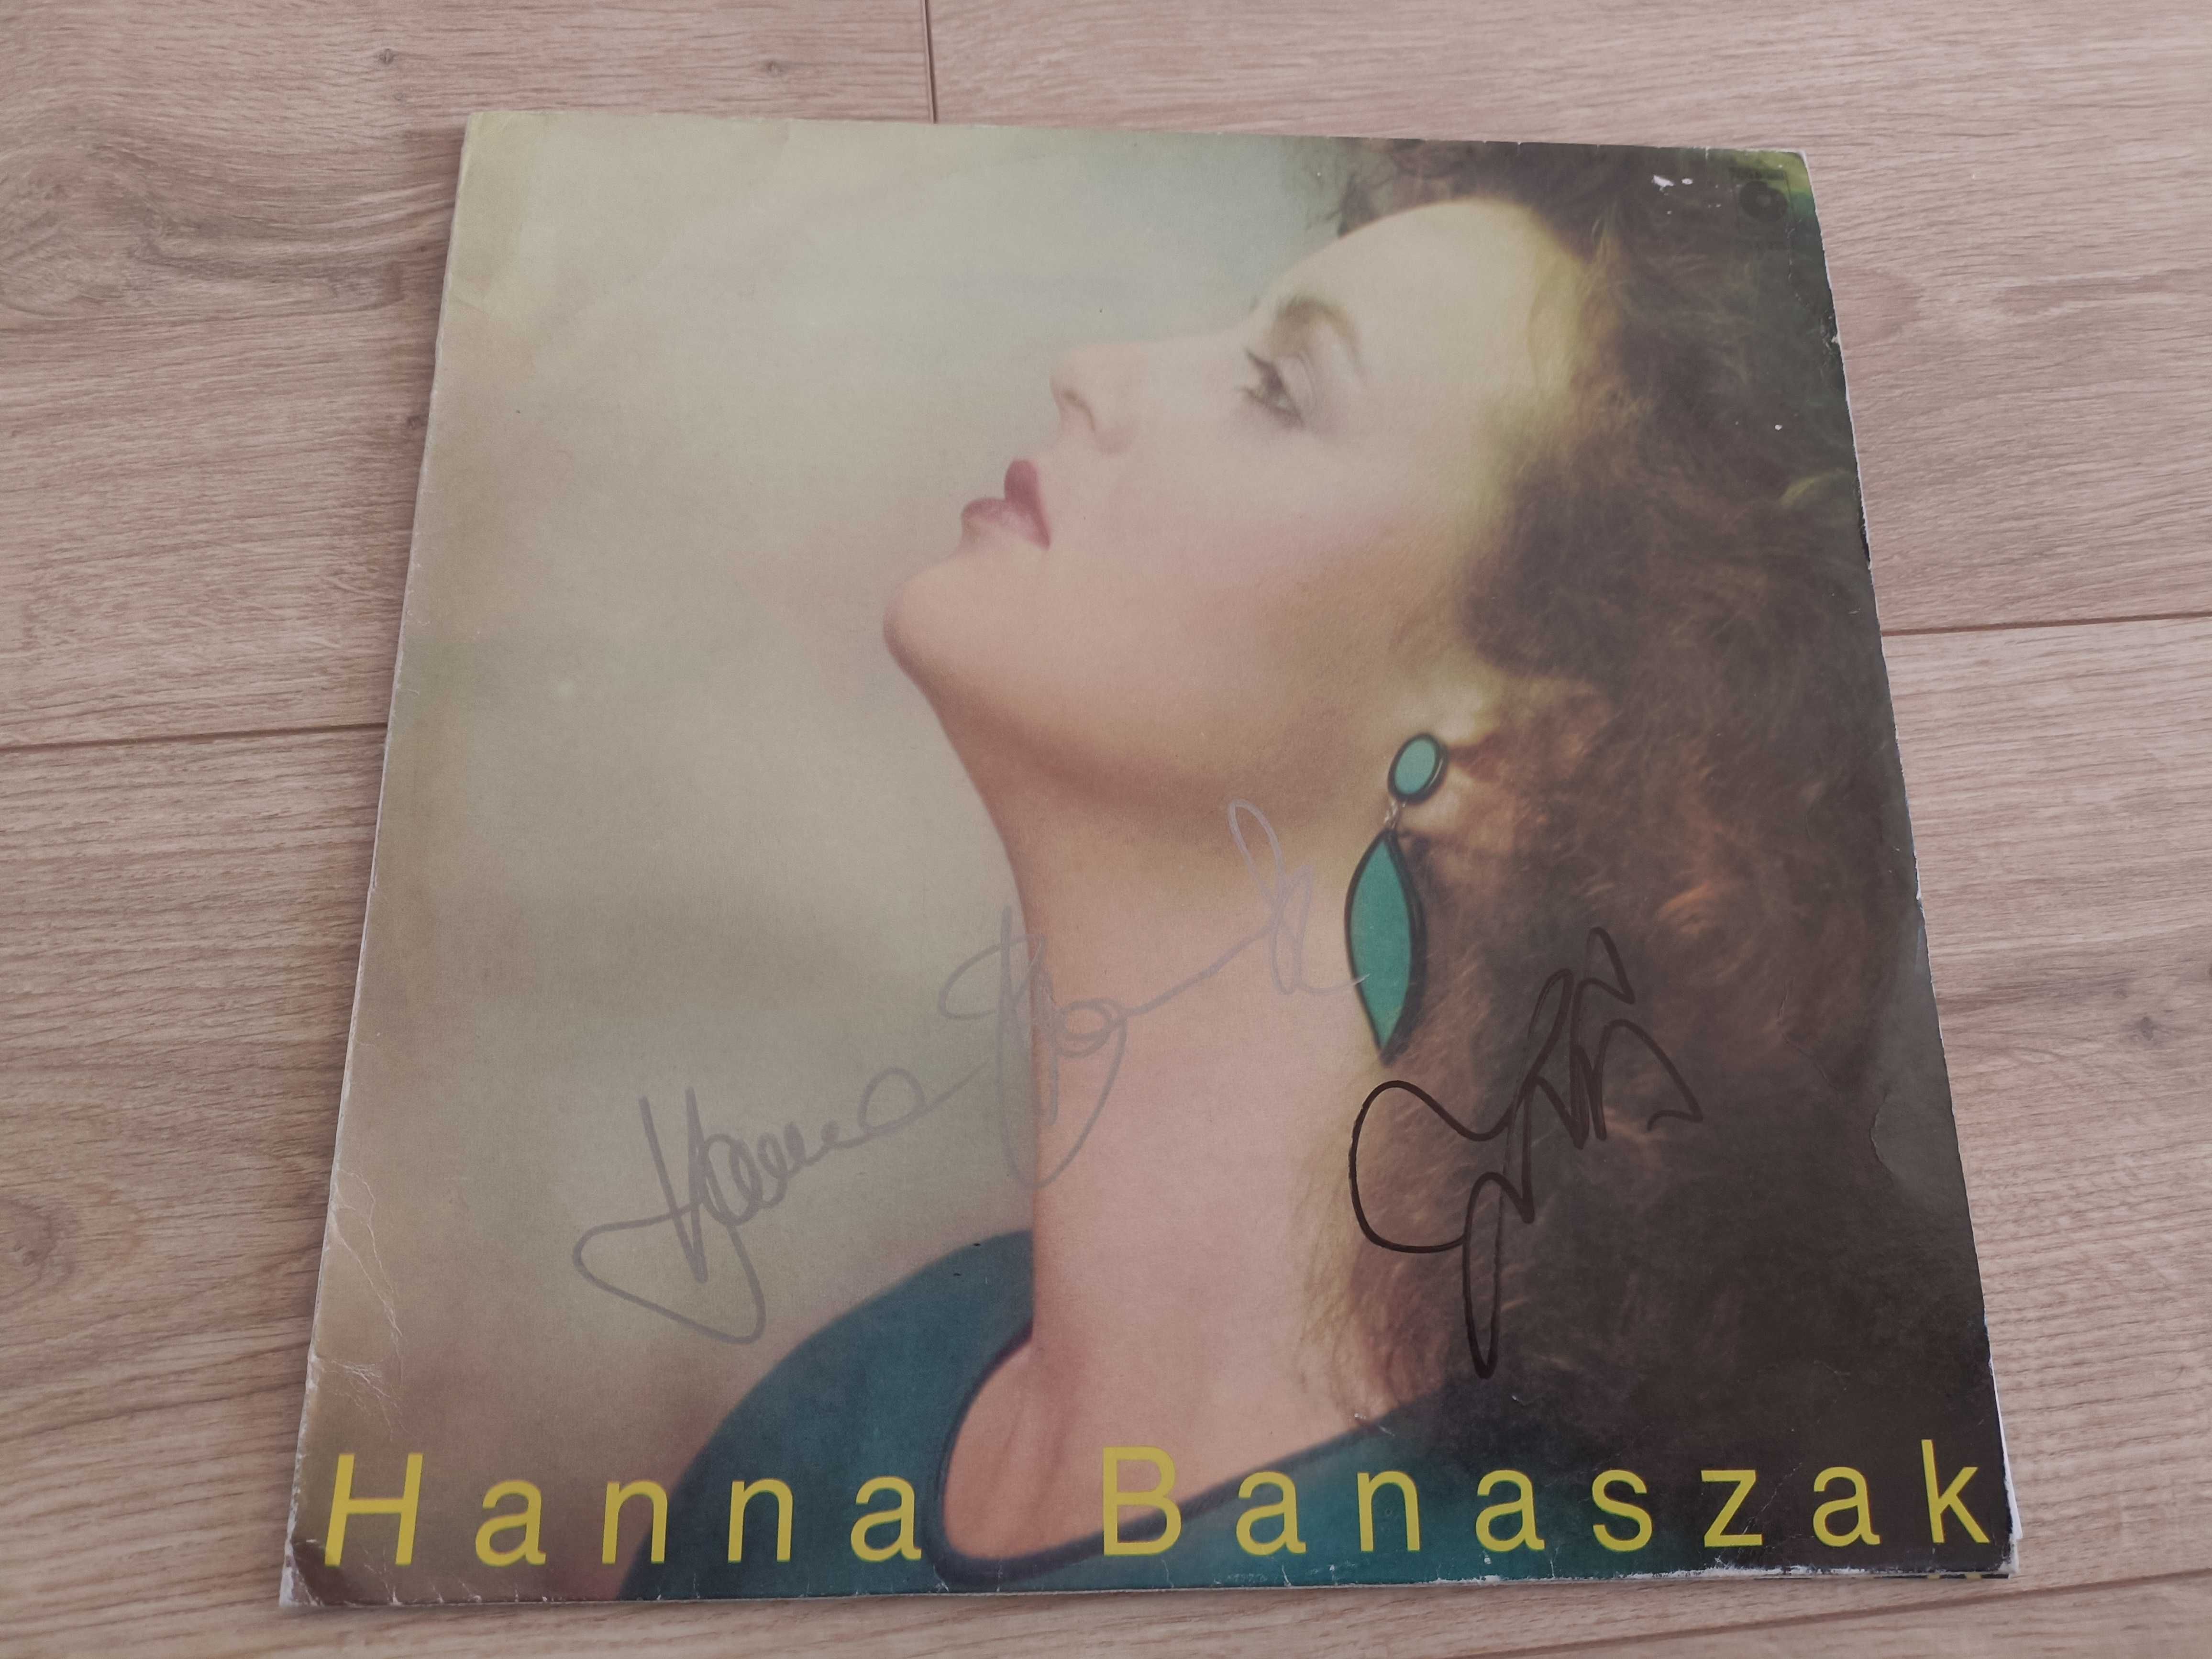 Hanna Banaszak - Hanna Banaszak, Mietek Jurecki - autografy